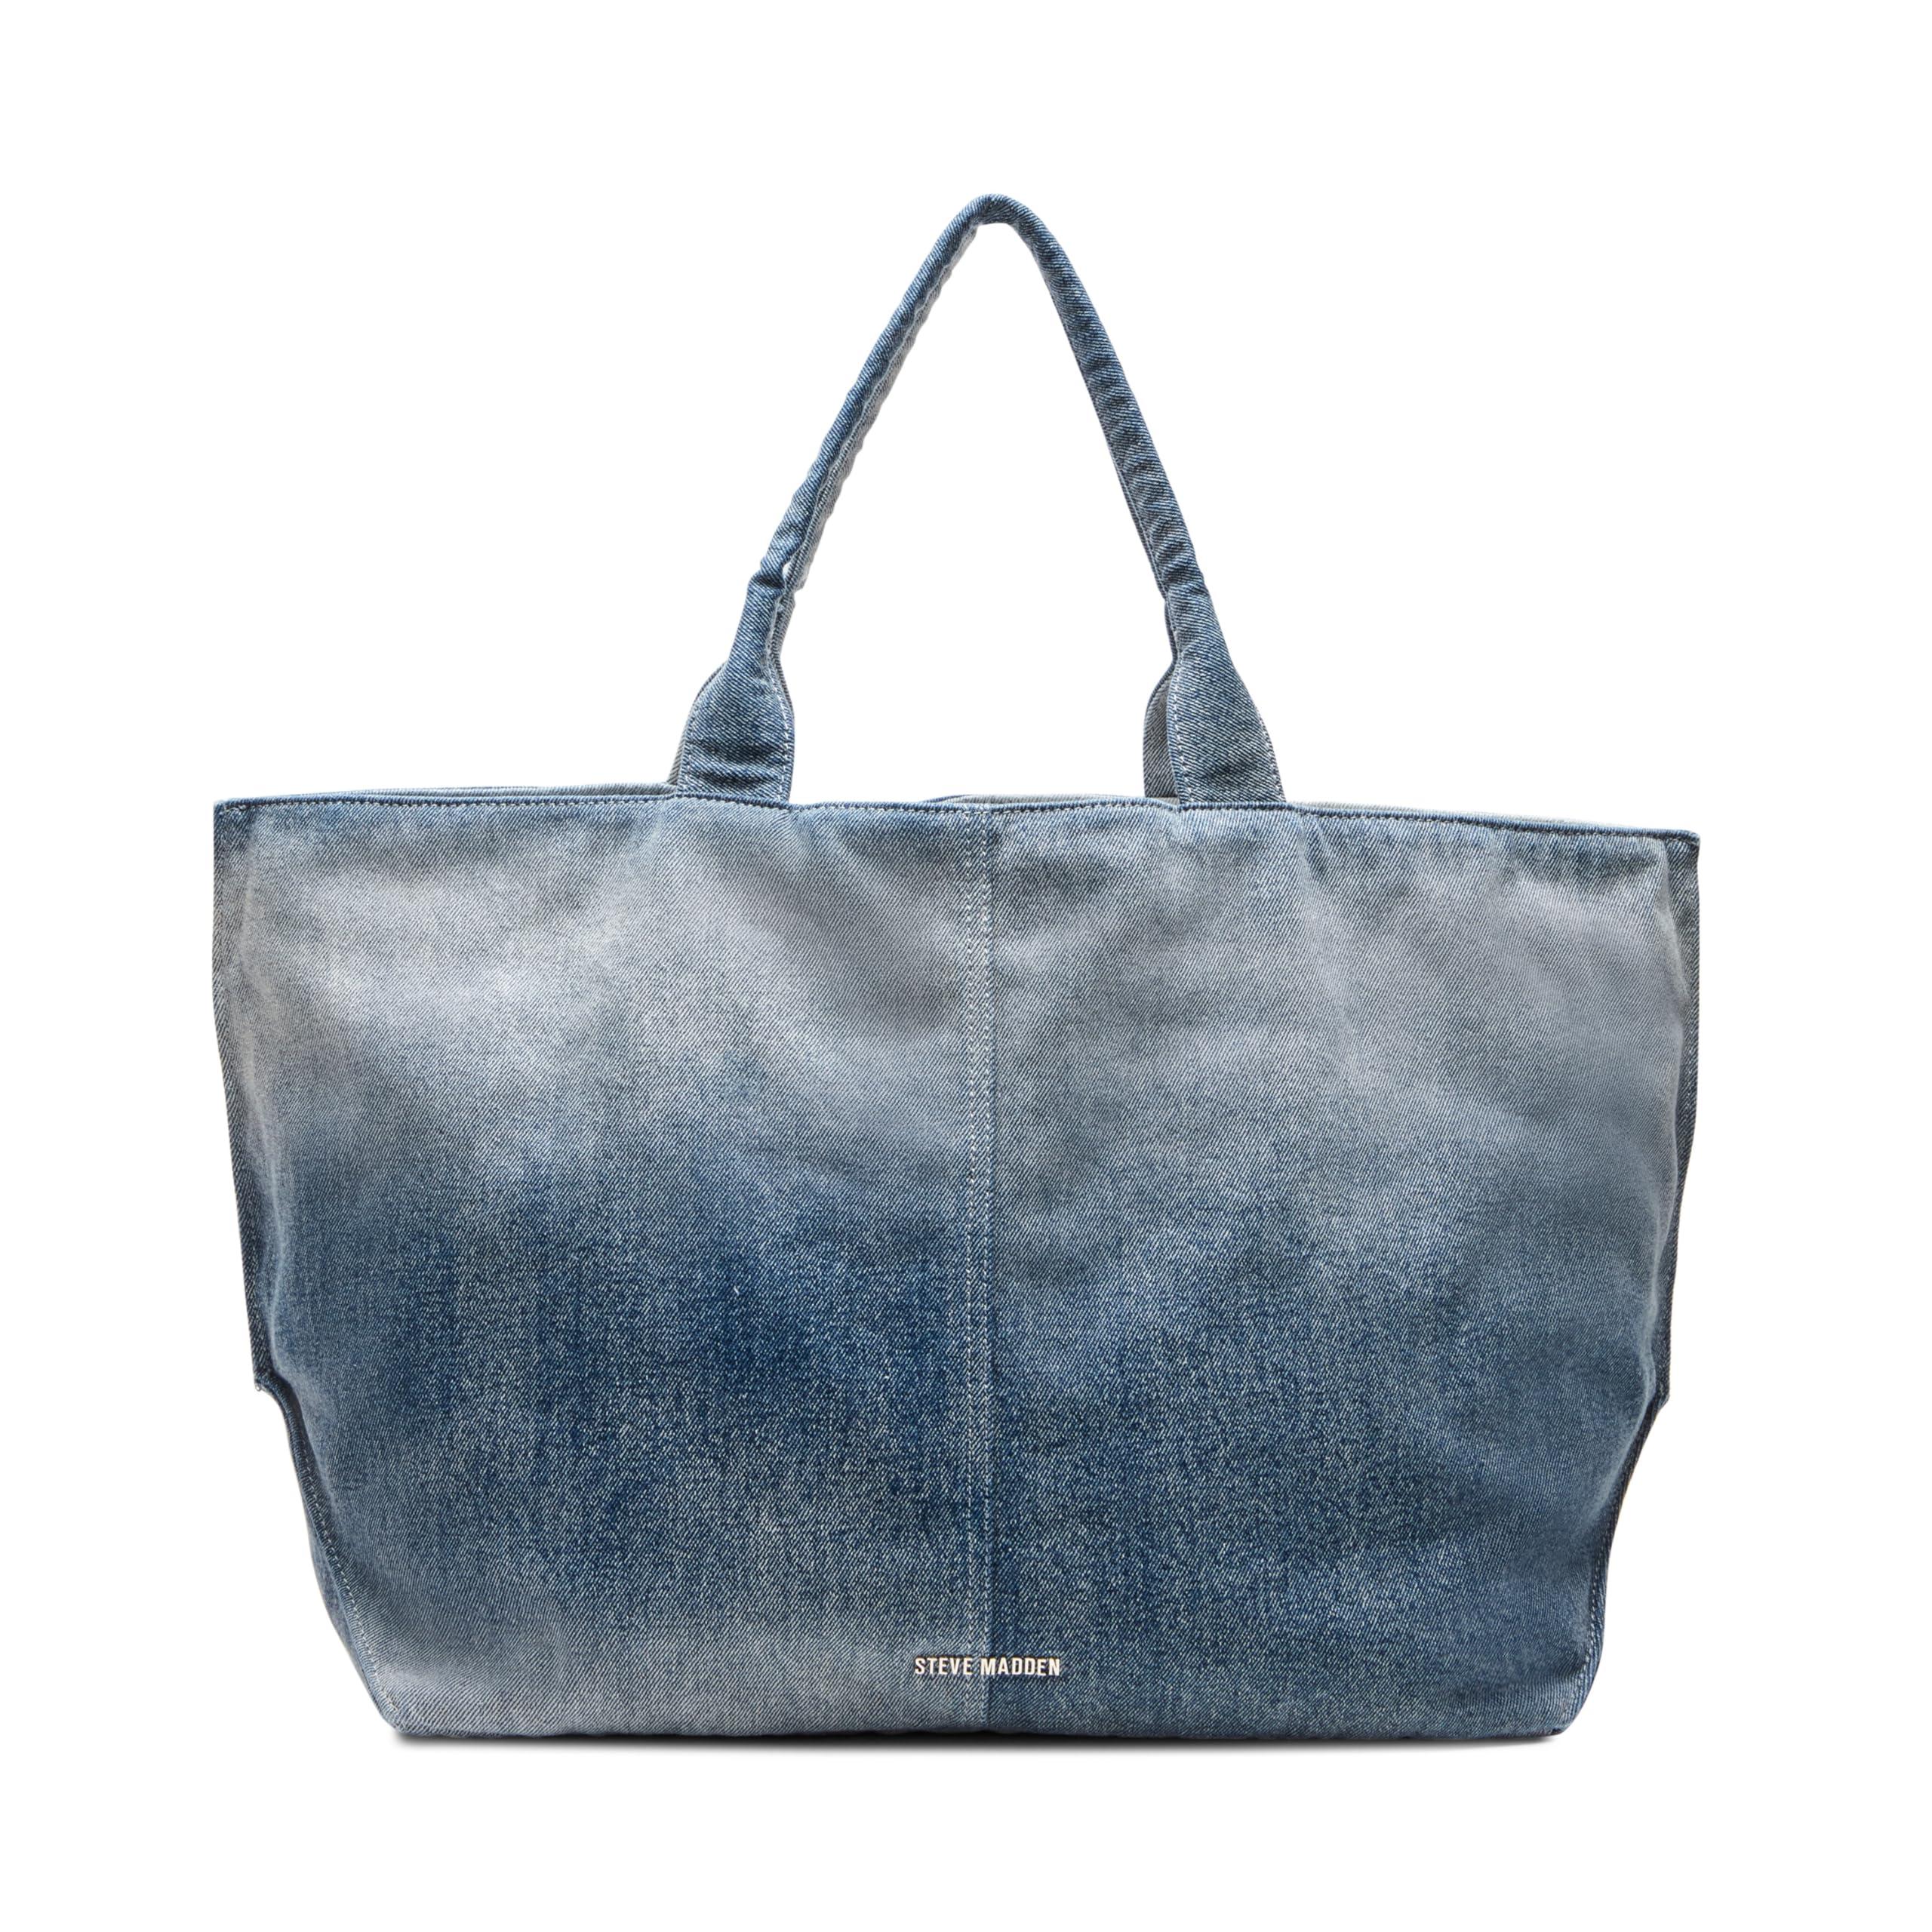 Steve Madden Women's Tote Bags - Blue